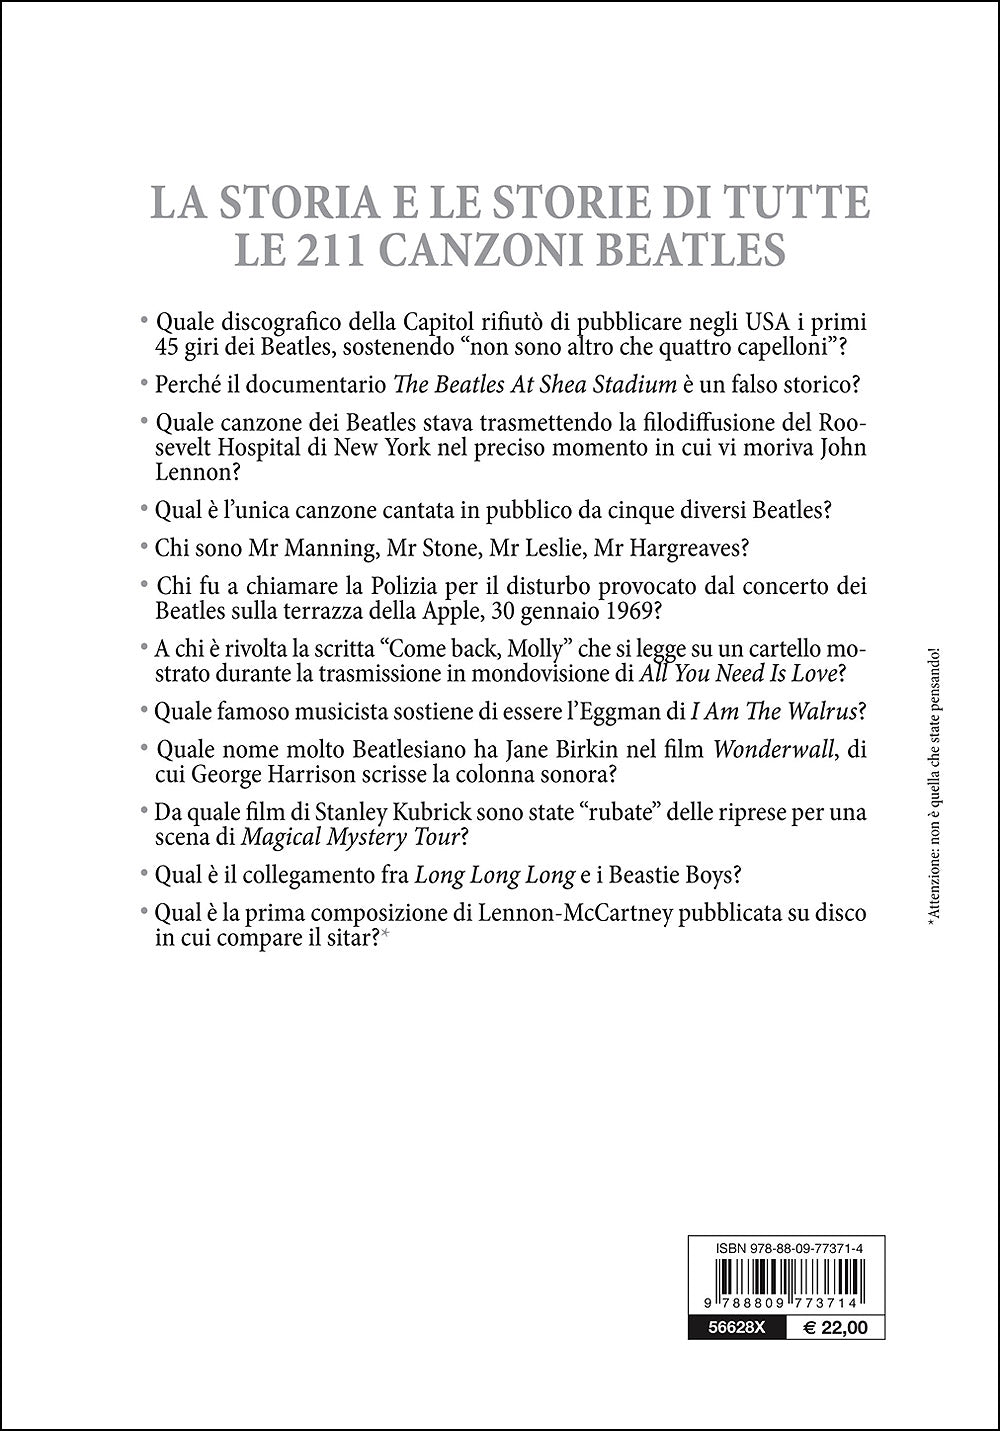 Il libro bianco dei Beatles::La storia e le storie di tutte le canzoni